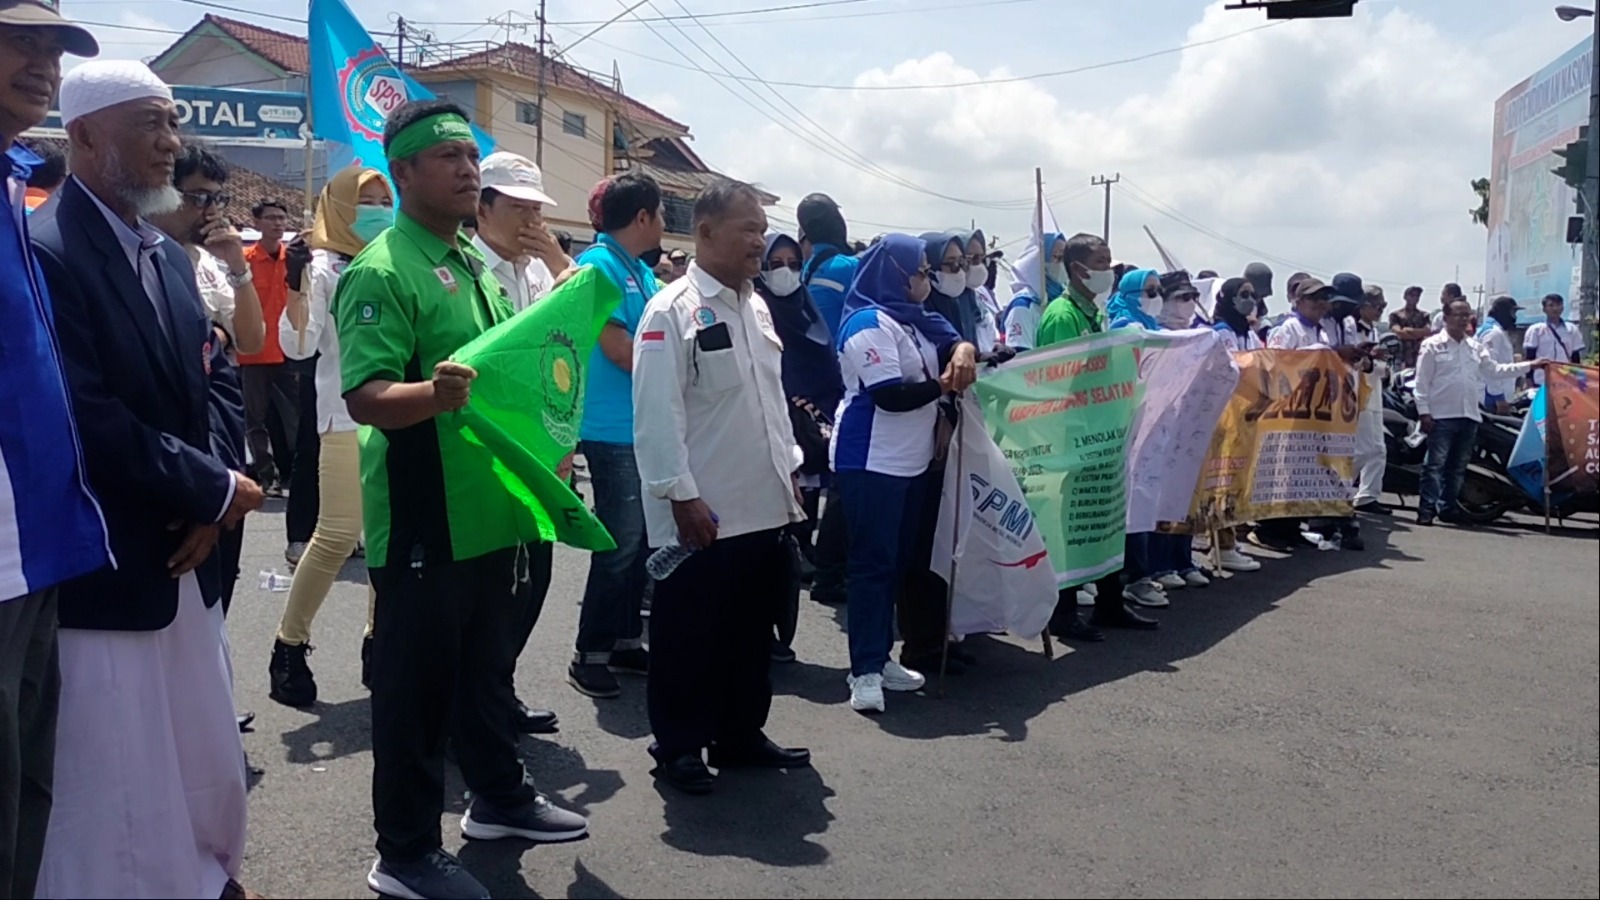 Kapolresta Bandar Lampung Kombes Pol. Ino Harianto mengapresiasi para buruh yang tertib dalam menjalankan aksi dan menyampaikan aspirasinya pada peringatan Hari Buruh Internasional